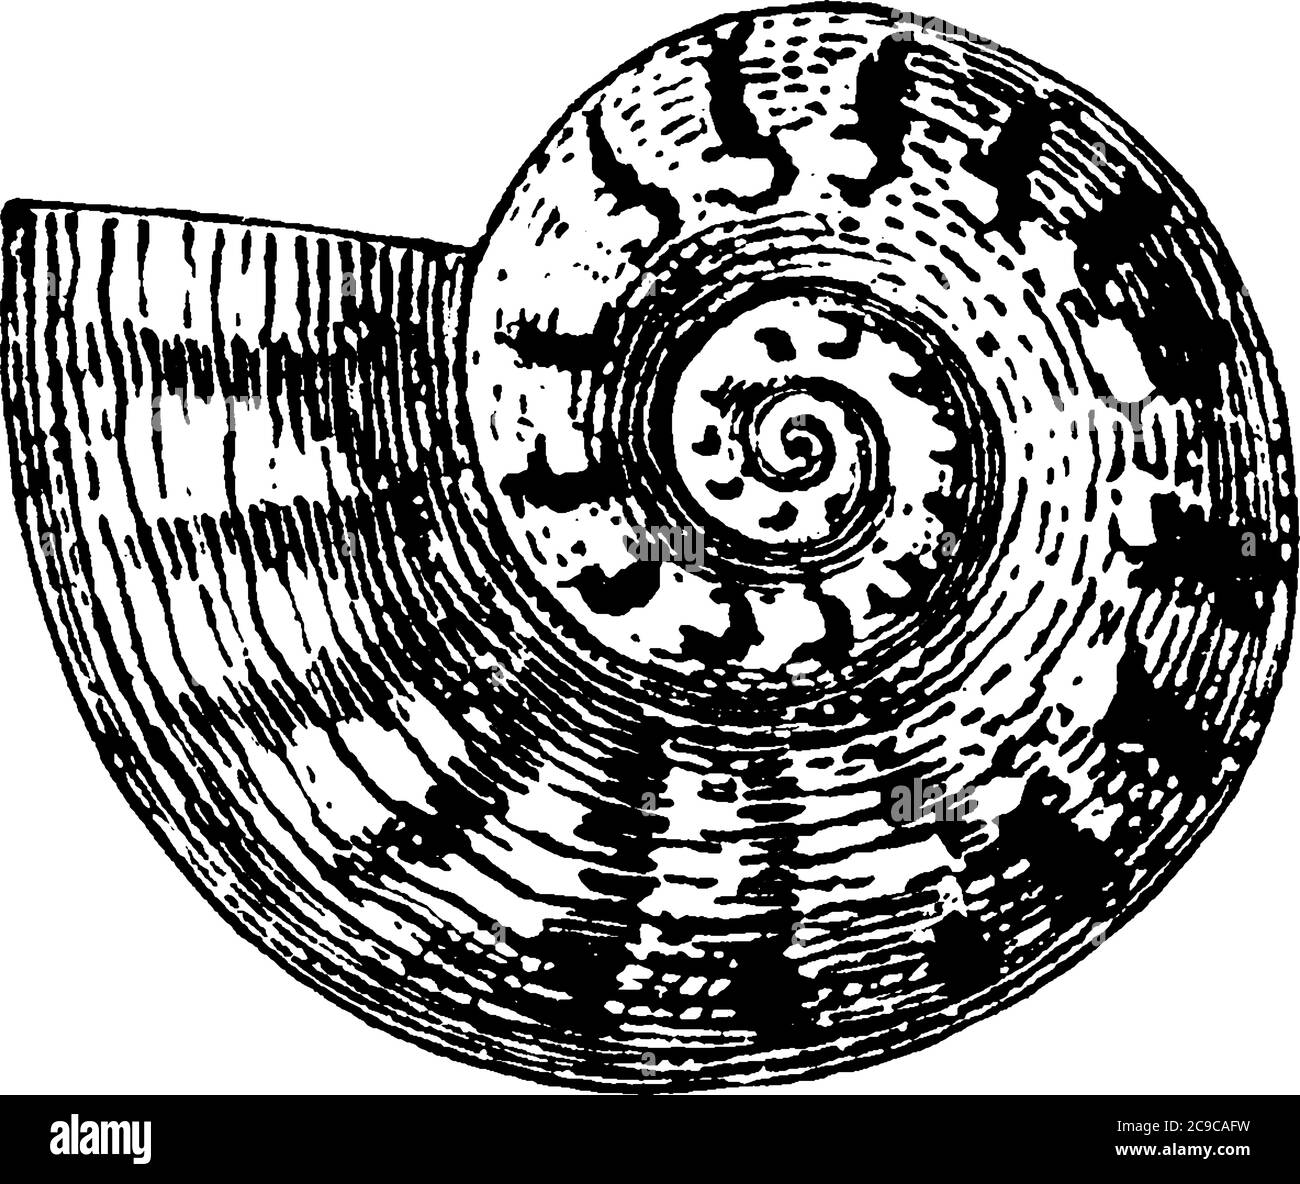 La conchiglia, dura e a spirale, creata da animali che vivono in mare, disegno di linee d'annata o illustrazione dell'incisione. Illustrazione Vettoriale